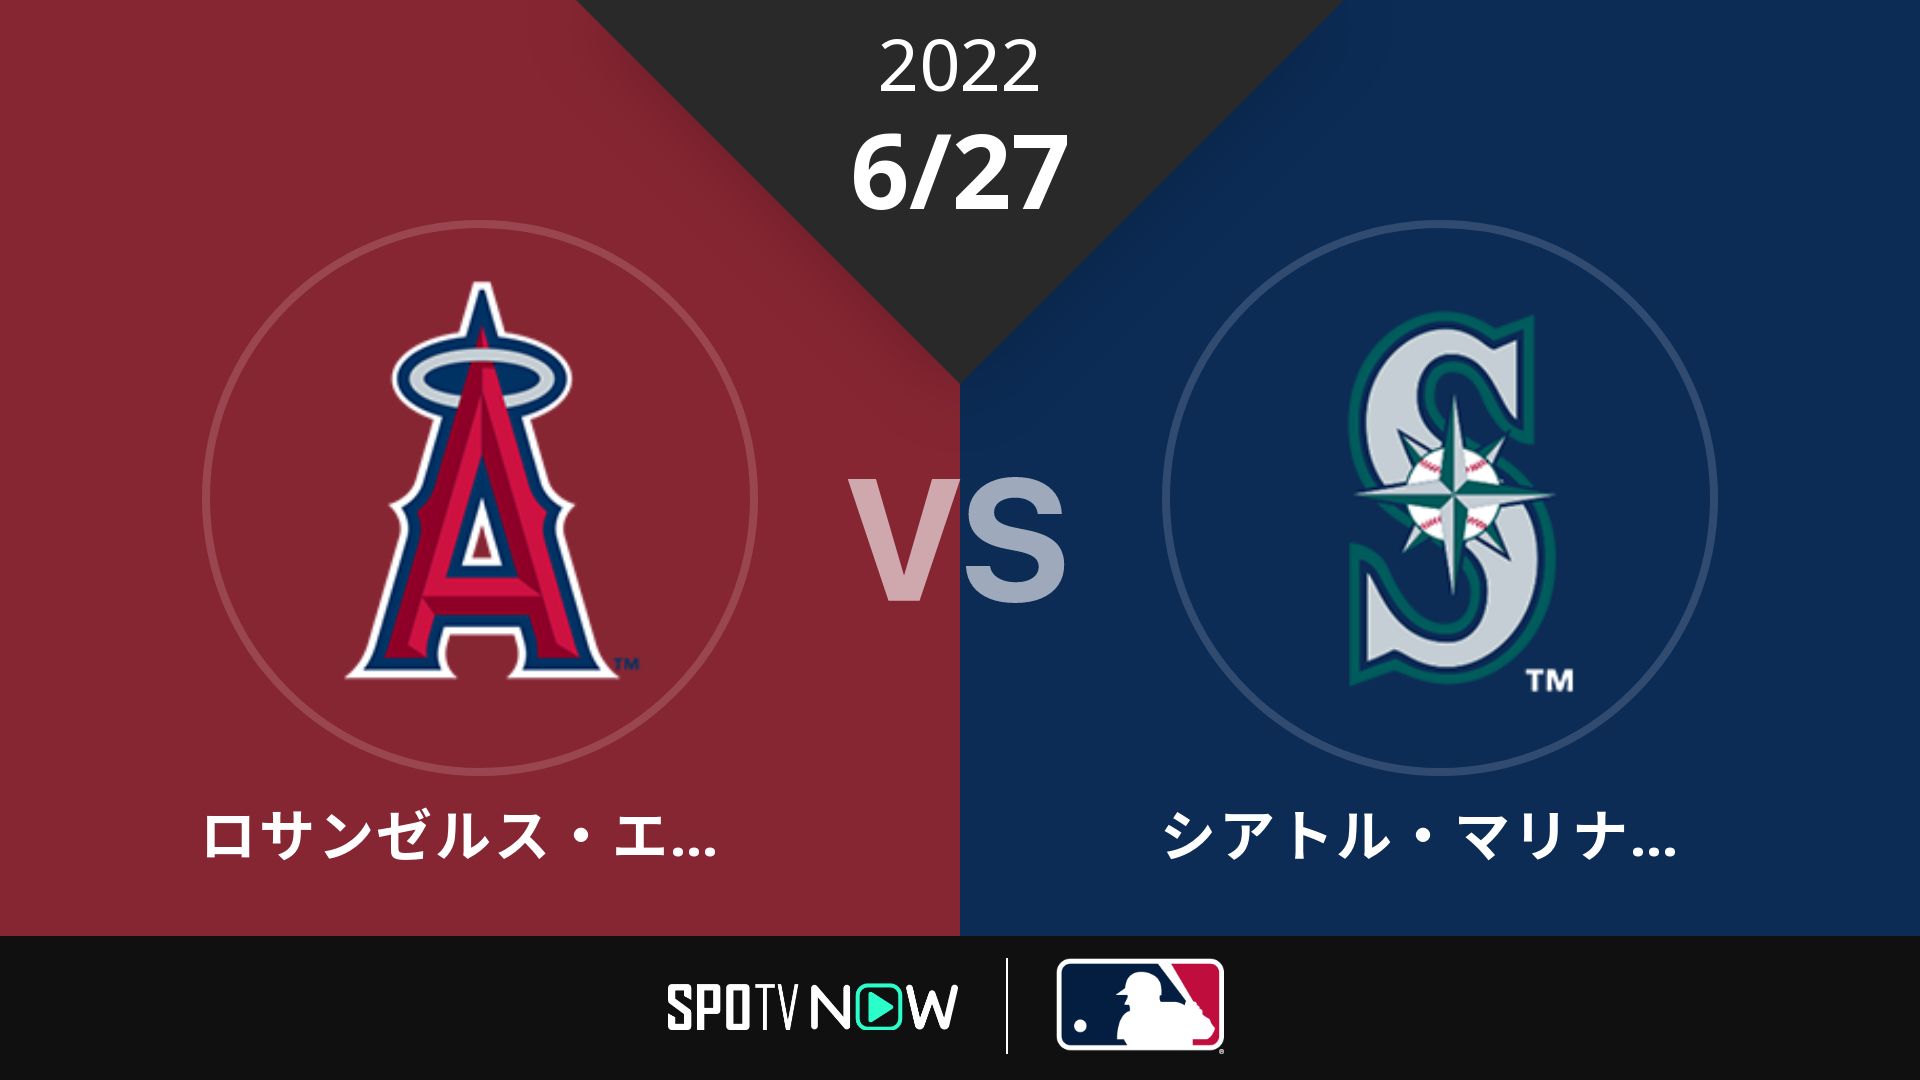 2022/6/27 エンゼルス vs マリナーズ [MLB]